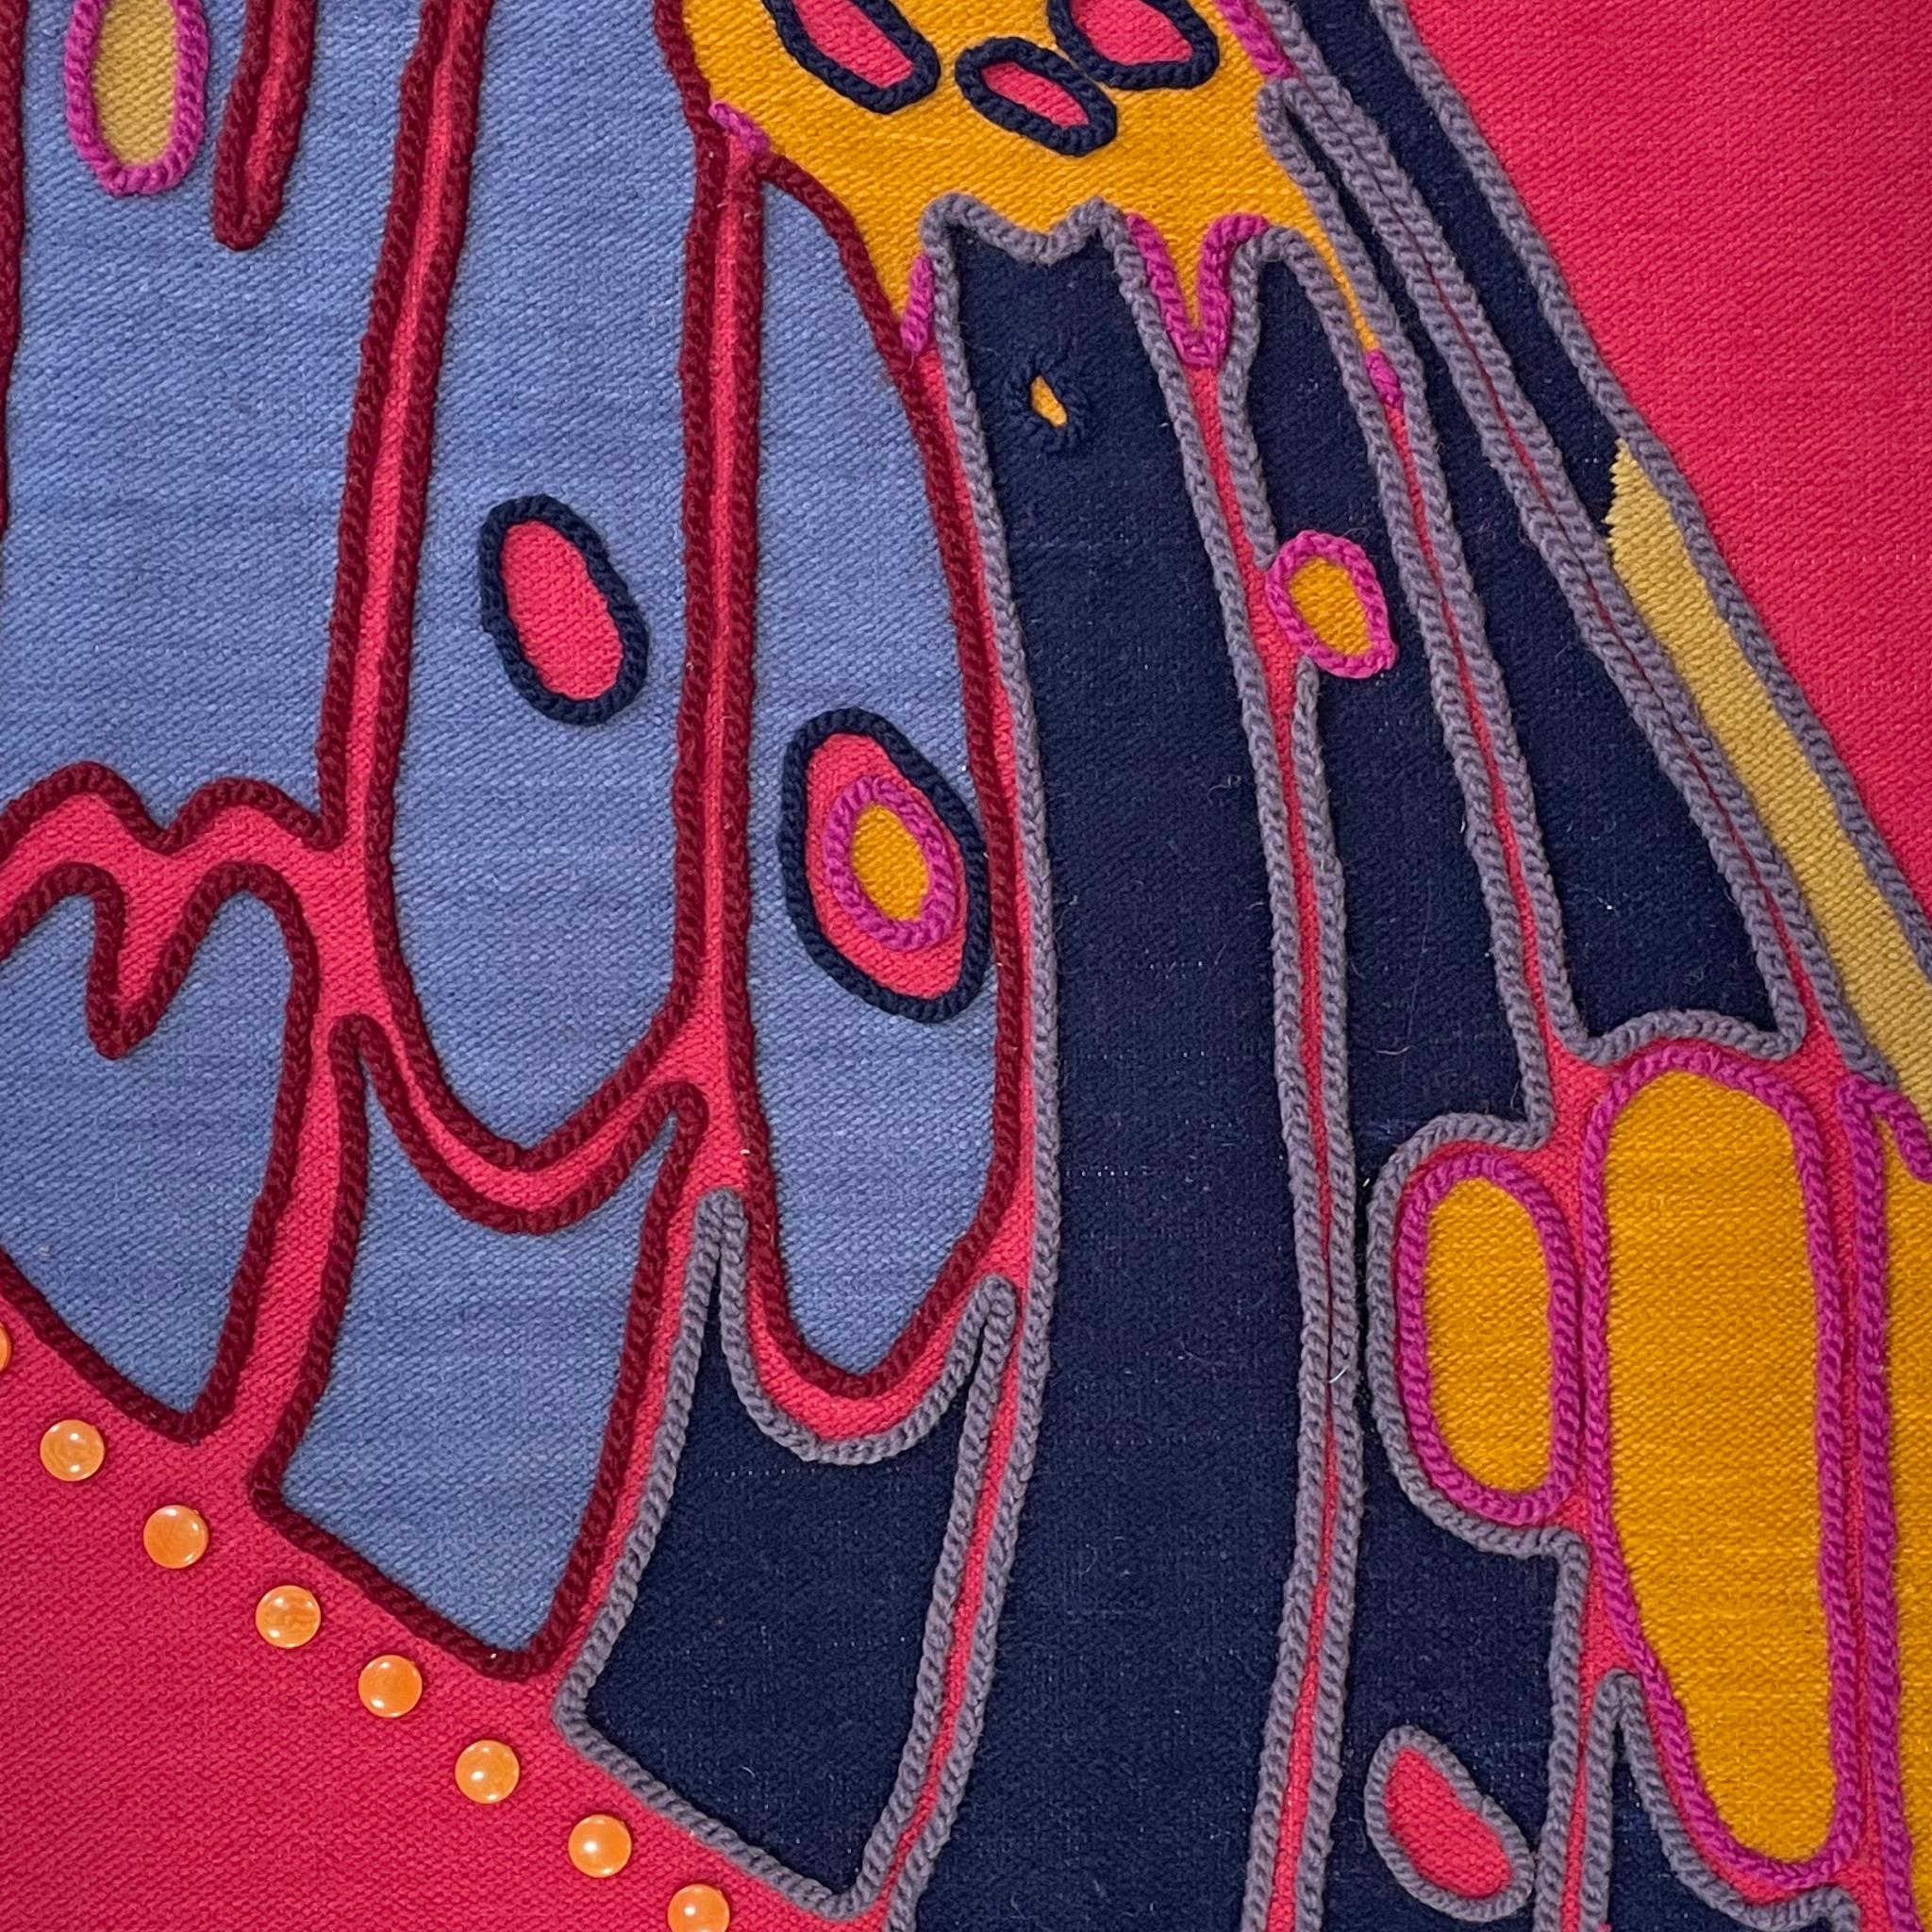 Tissée et teinte à la main avec des colorants résistants aux couleurs en laine de mouton 100% équatorienne, la tapisserie Polilla, conçue par Belen Mena, est inspirée par les papillons de nuit de la forêt nuageuse équatorienne. Chaque tapisserie est